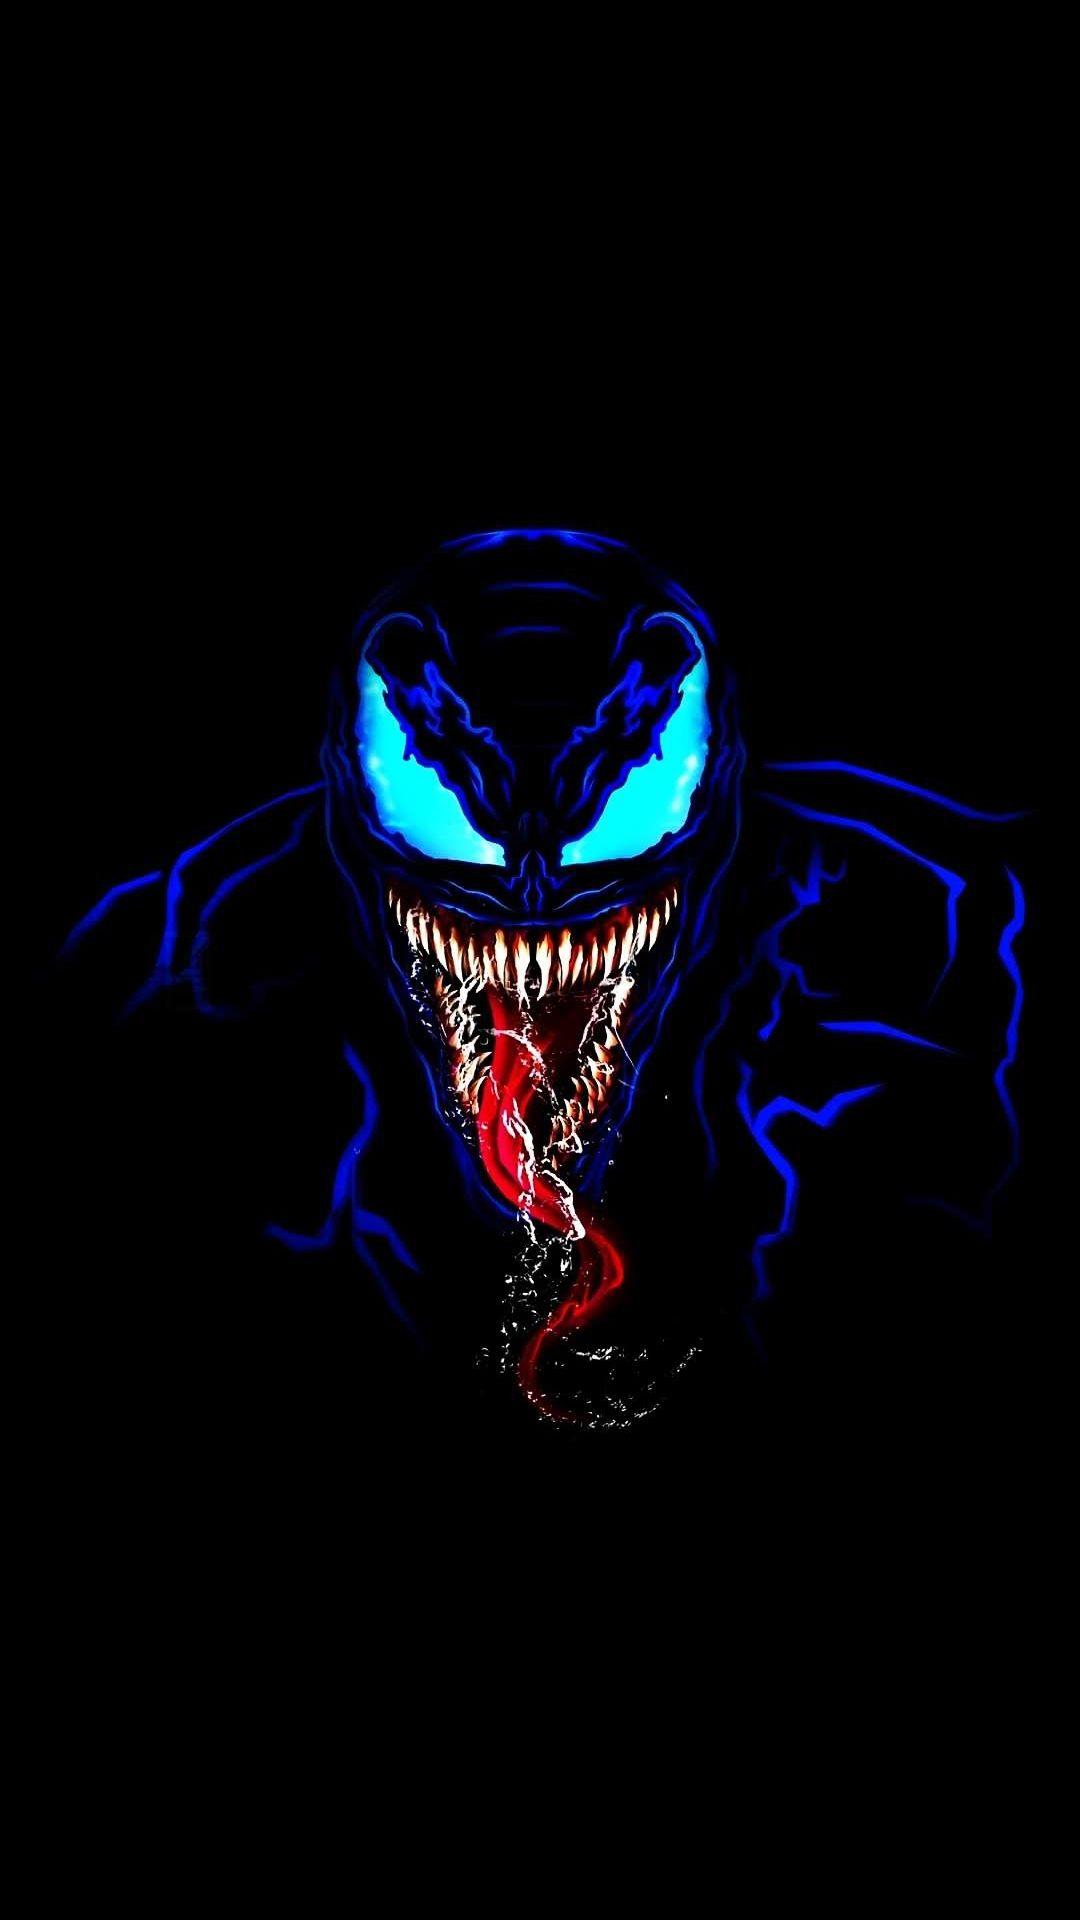 Venom in Dark iPhone Wallpaper. Marvel artwork, Avengers